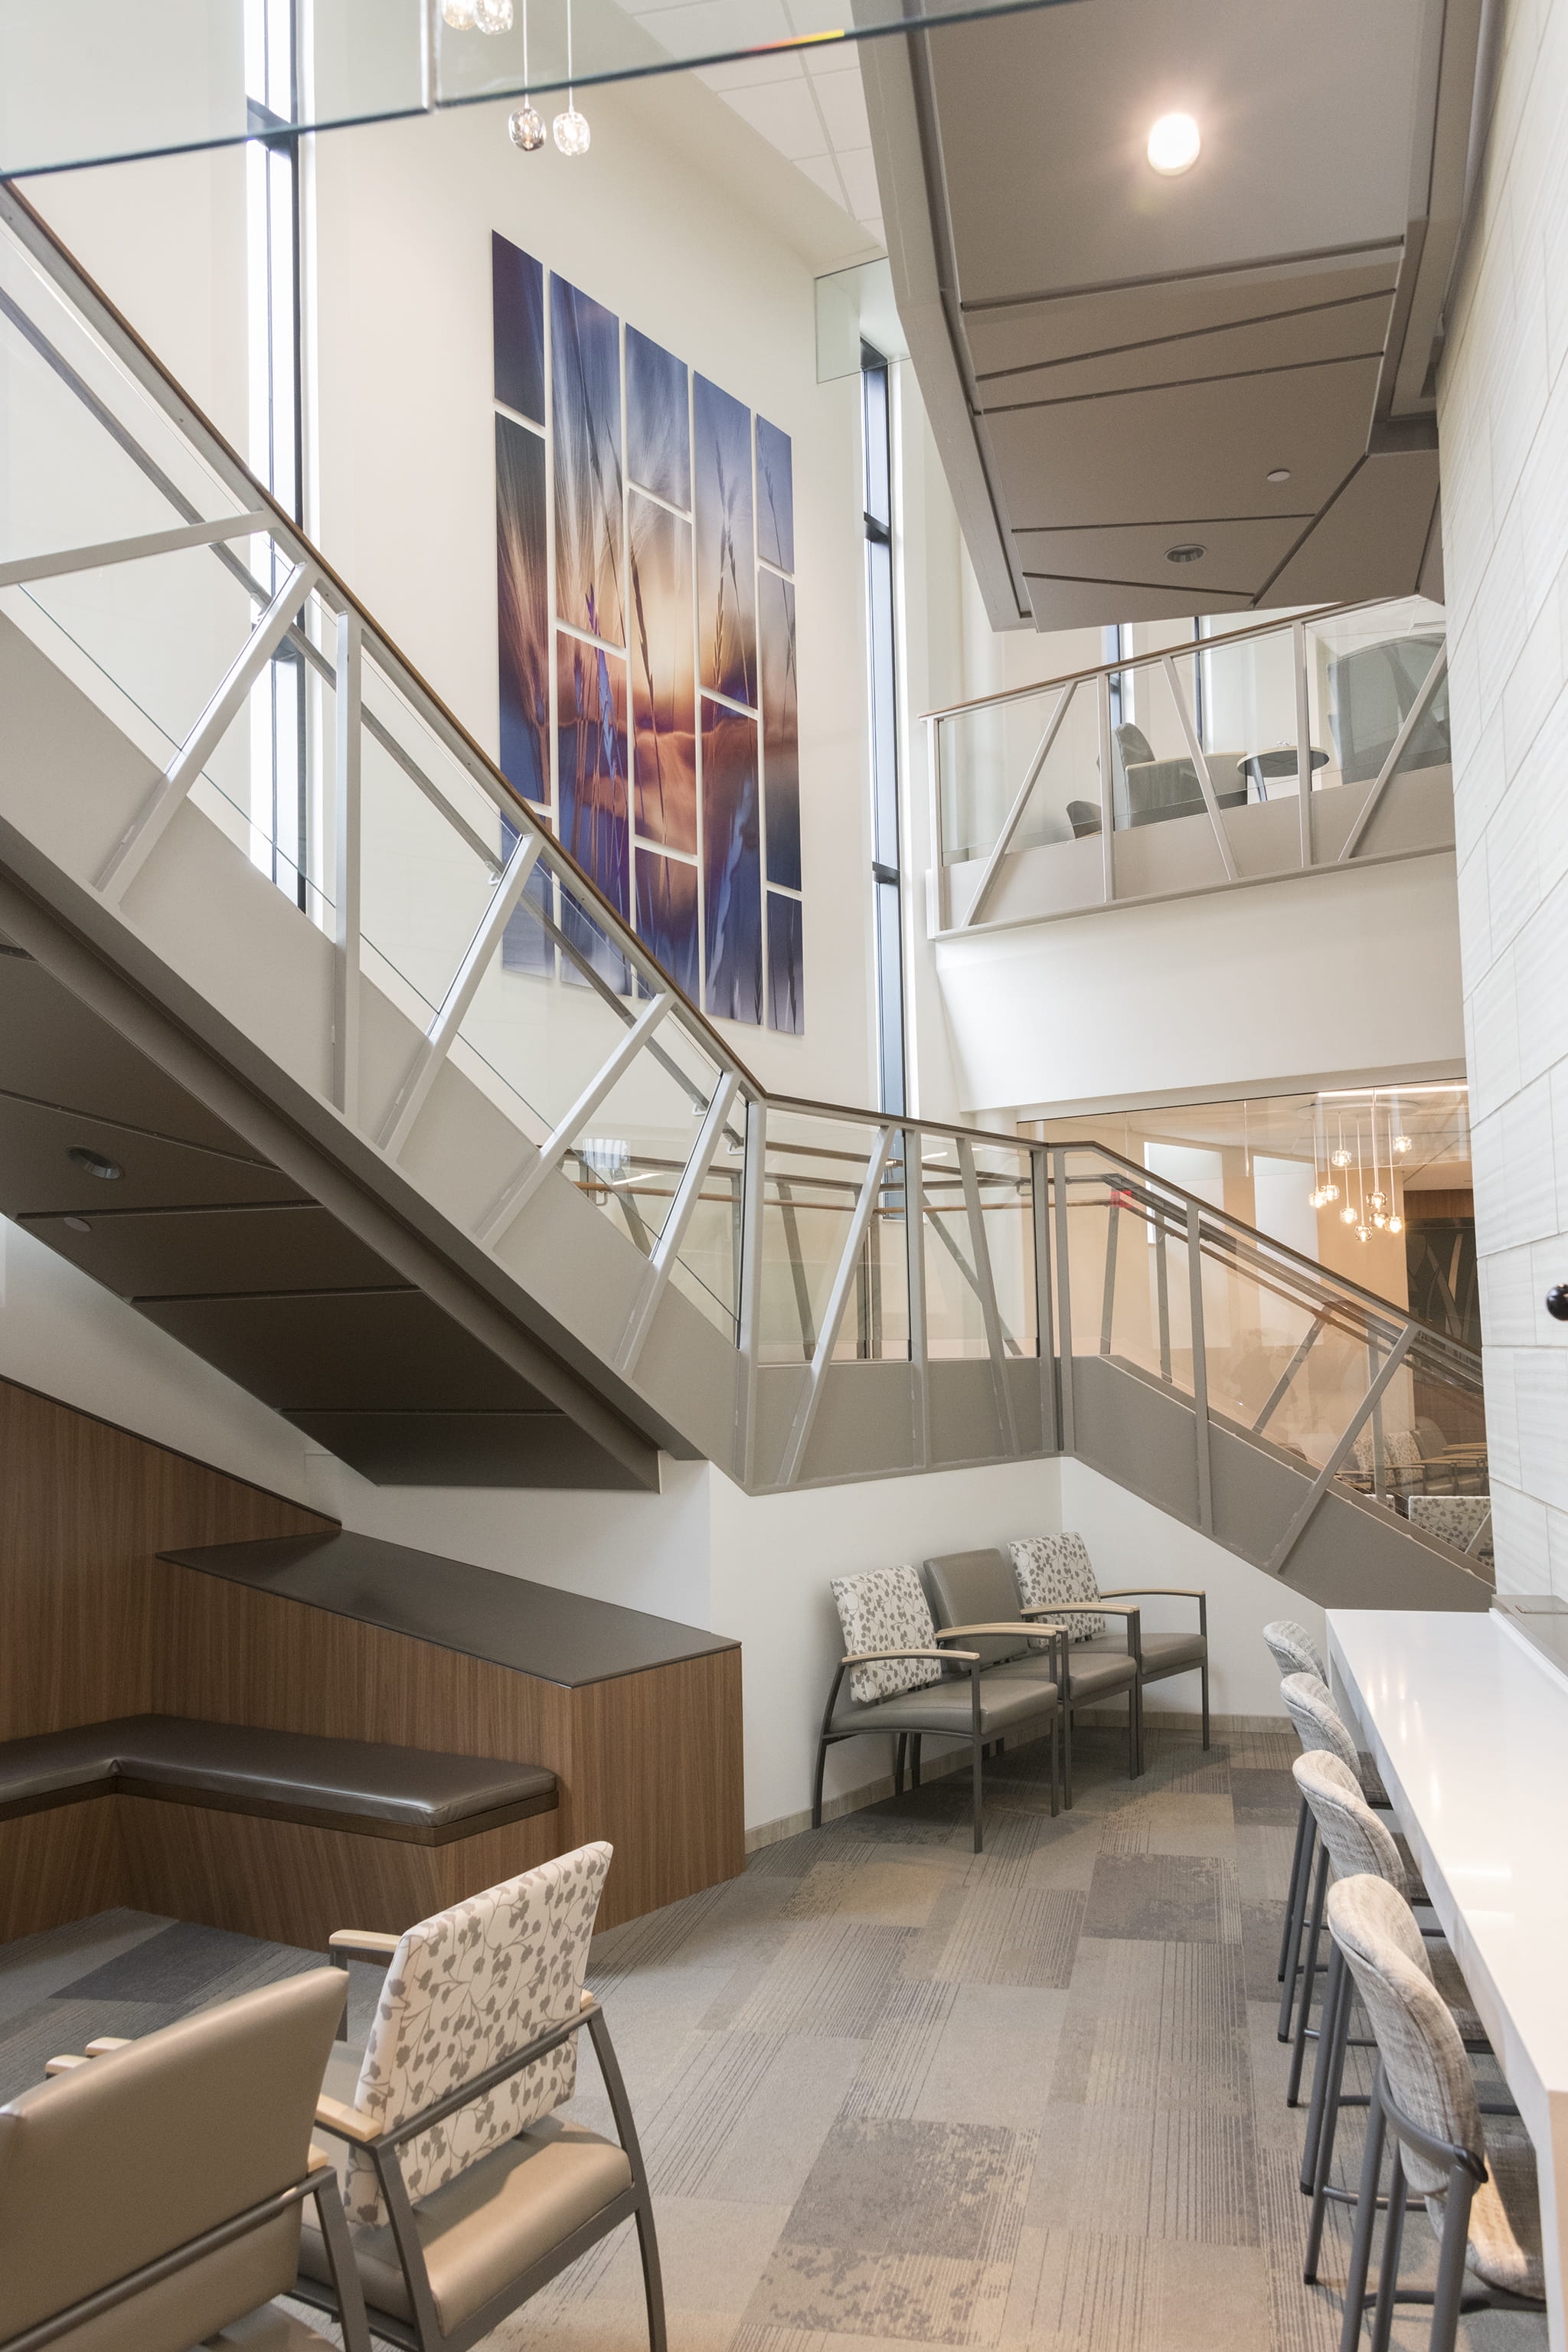 Oversized Multi-Panel Artwork in Hospital